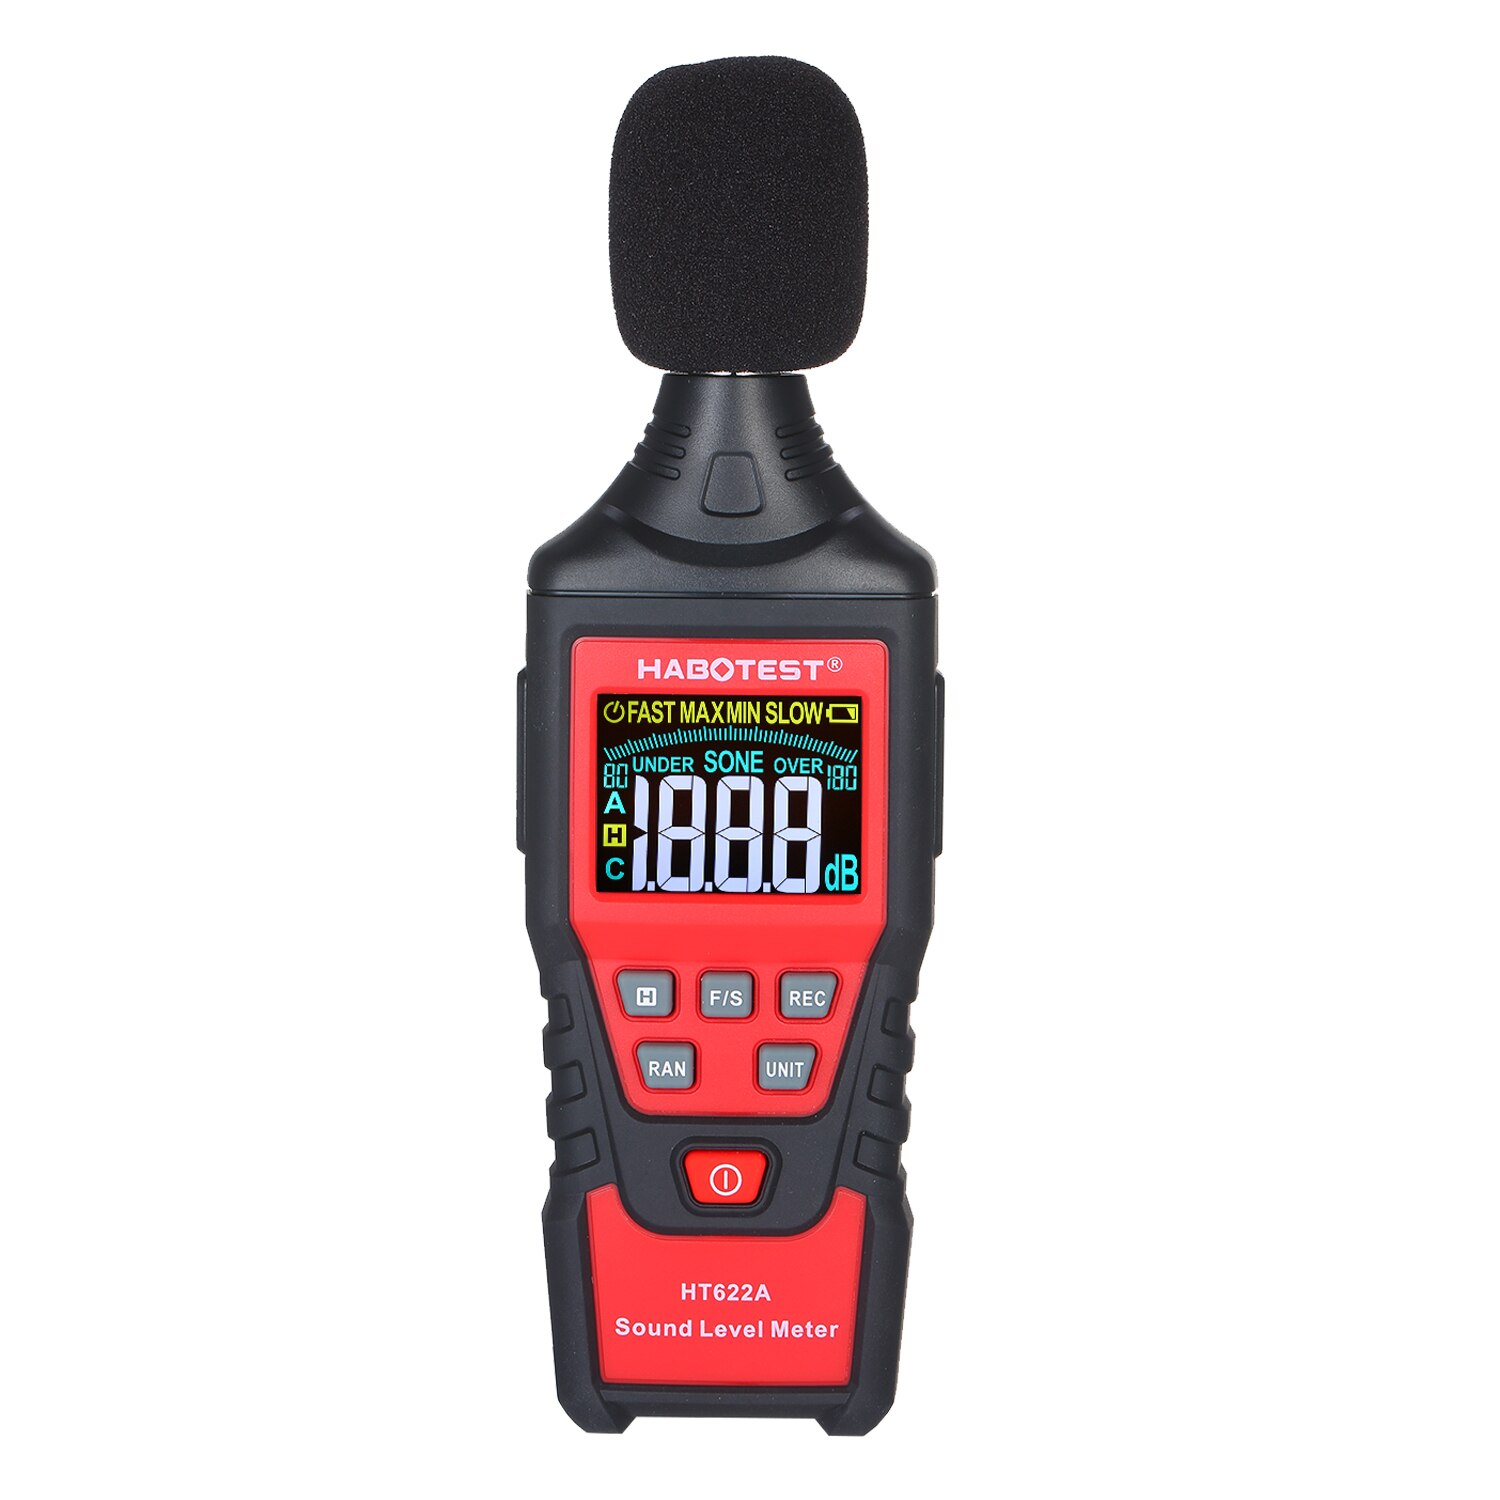 HT622B Digitale Decibelmeter Met Usb-poort A/C Gewogen Sound Level Meter Lcd-kleurenscherm Handheld Noise Sound detector